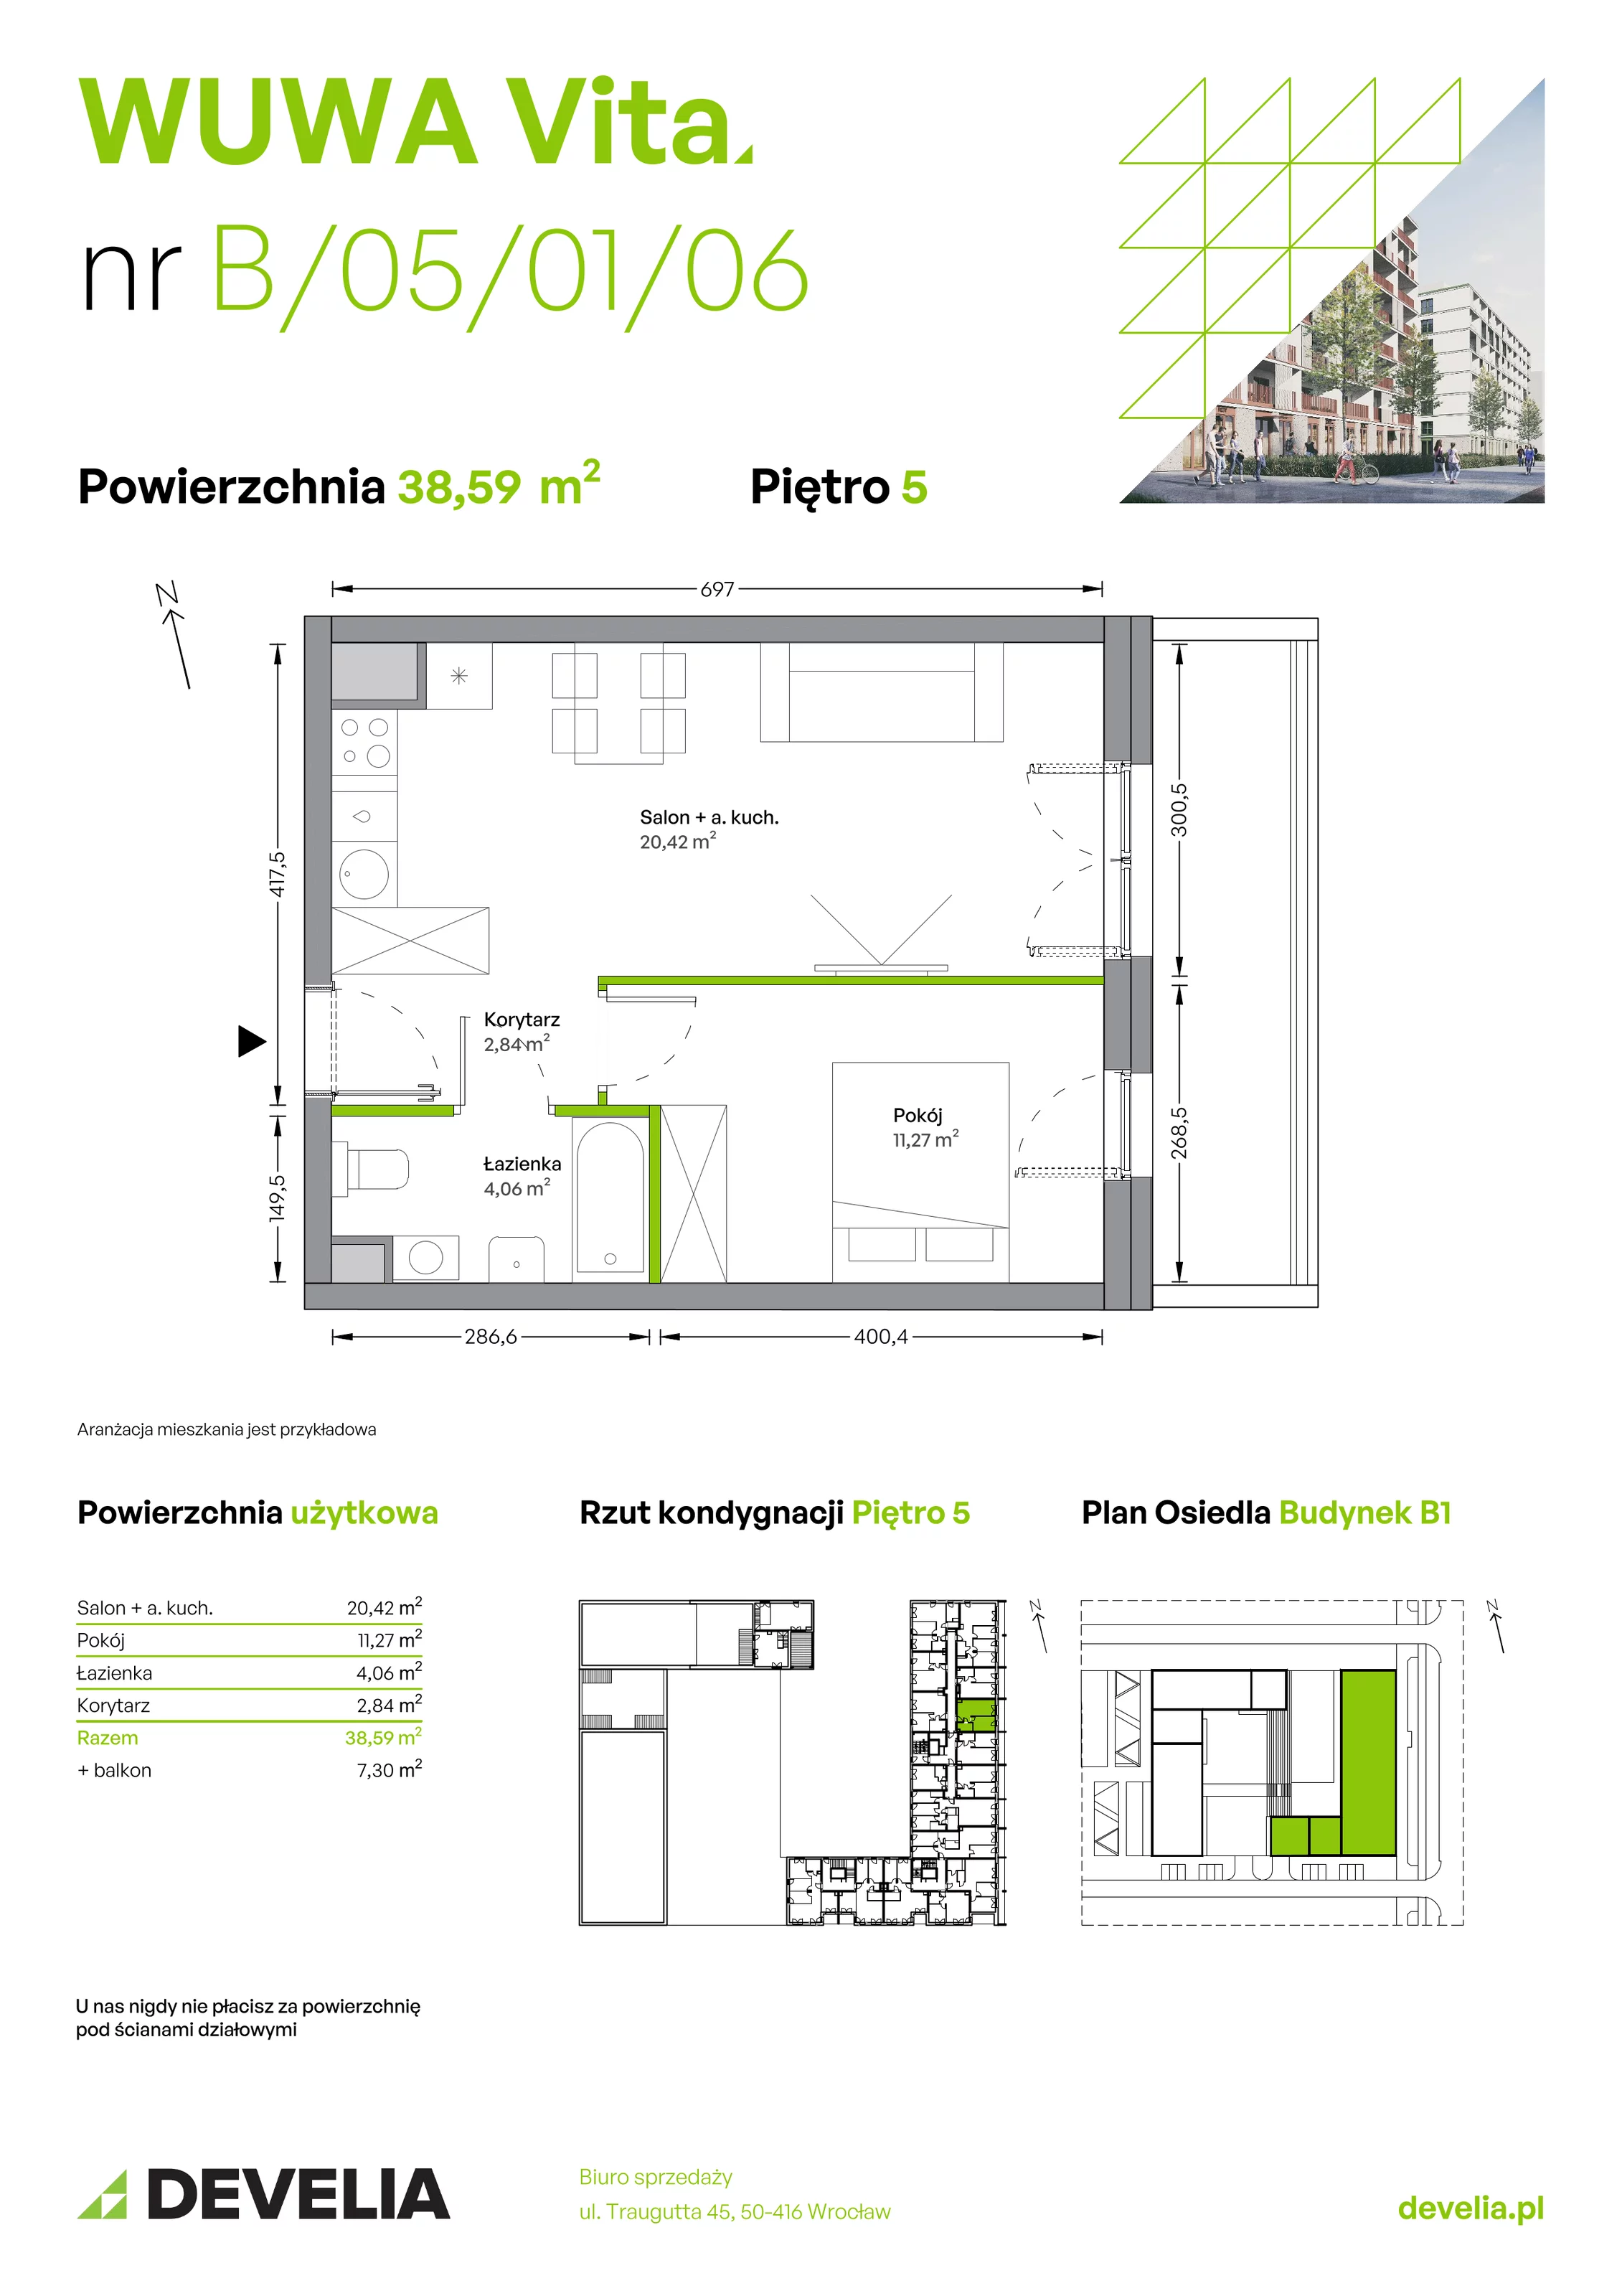 Mieszkanie 38,59 m², piętro 5, oferta nr B.05.01.06, WUWA Vita, Wrocław, Żerniki, Fabryczna, ul. Tadeusza Brzozy